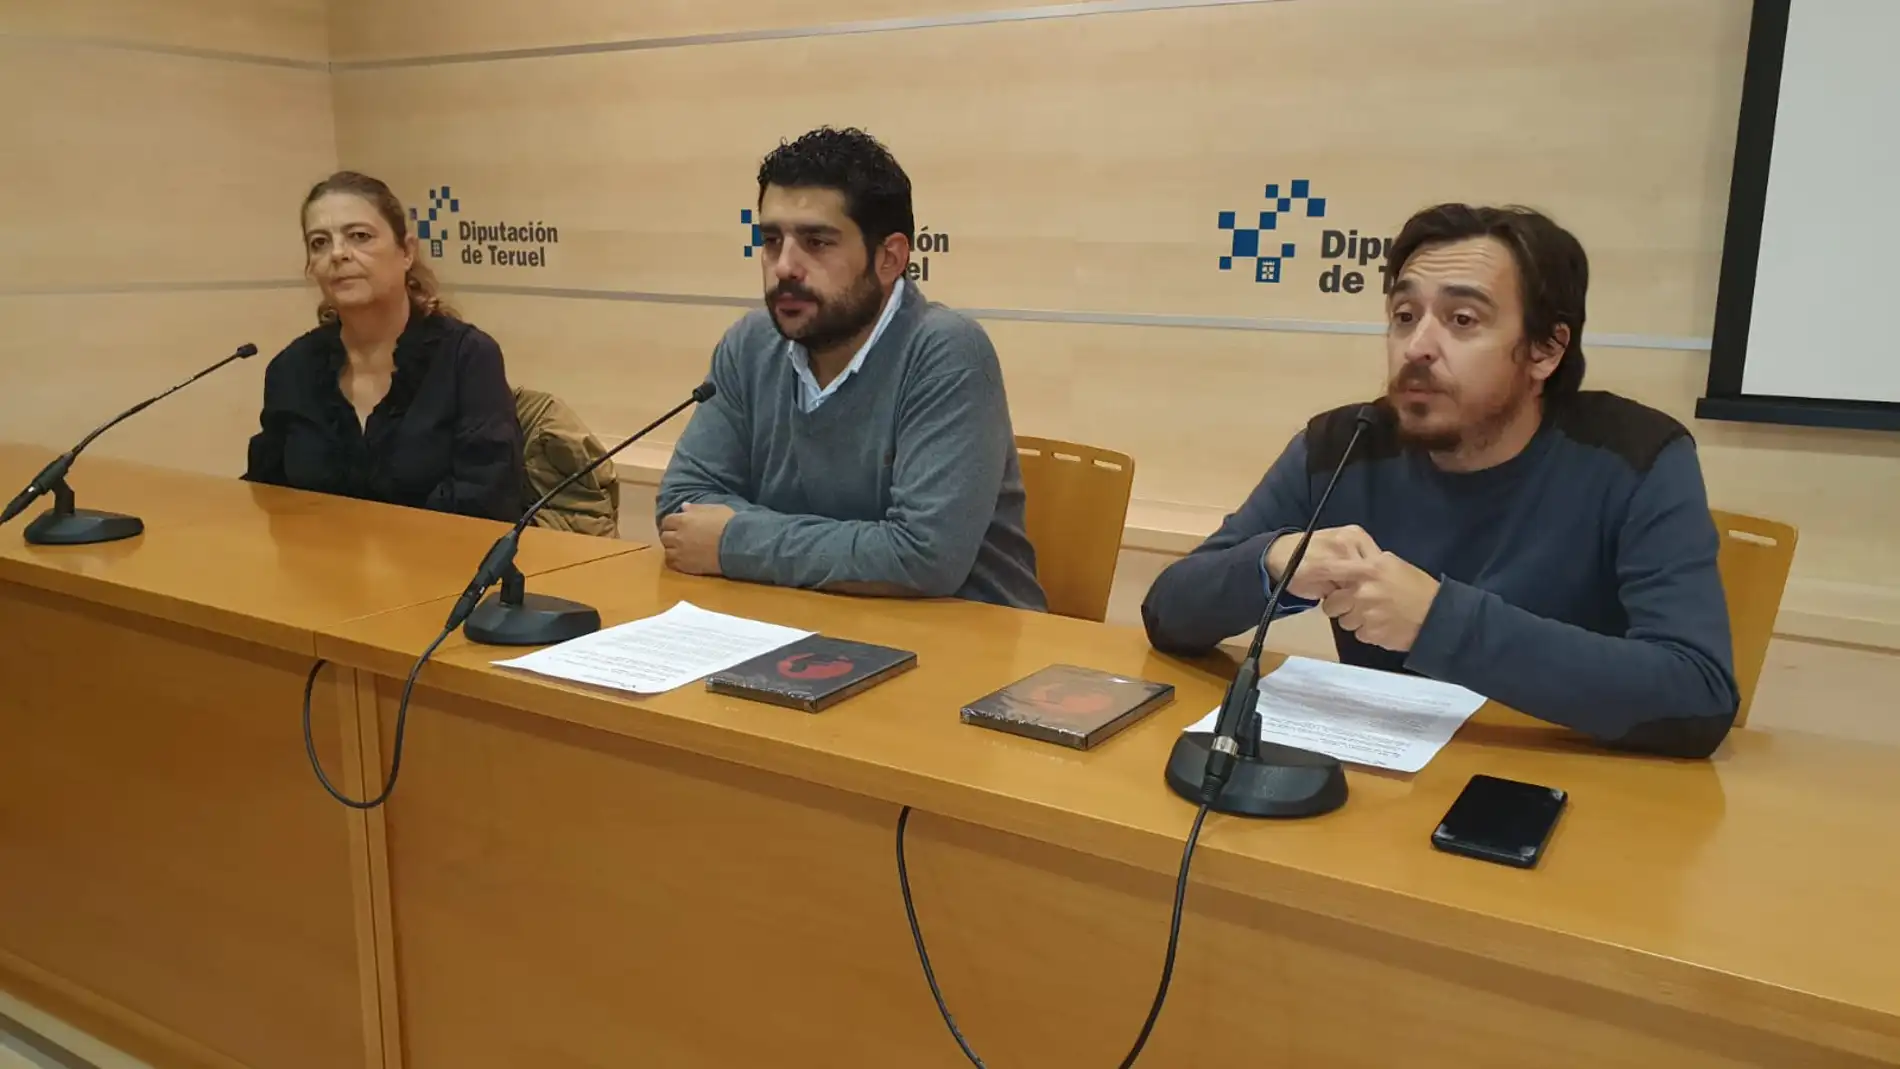 La directora del documental, Sonia Llera, el diputado de Cultura de la Diputación de Teruel, Diego Piñeiro, y el director del IET, Nacho Escuín